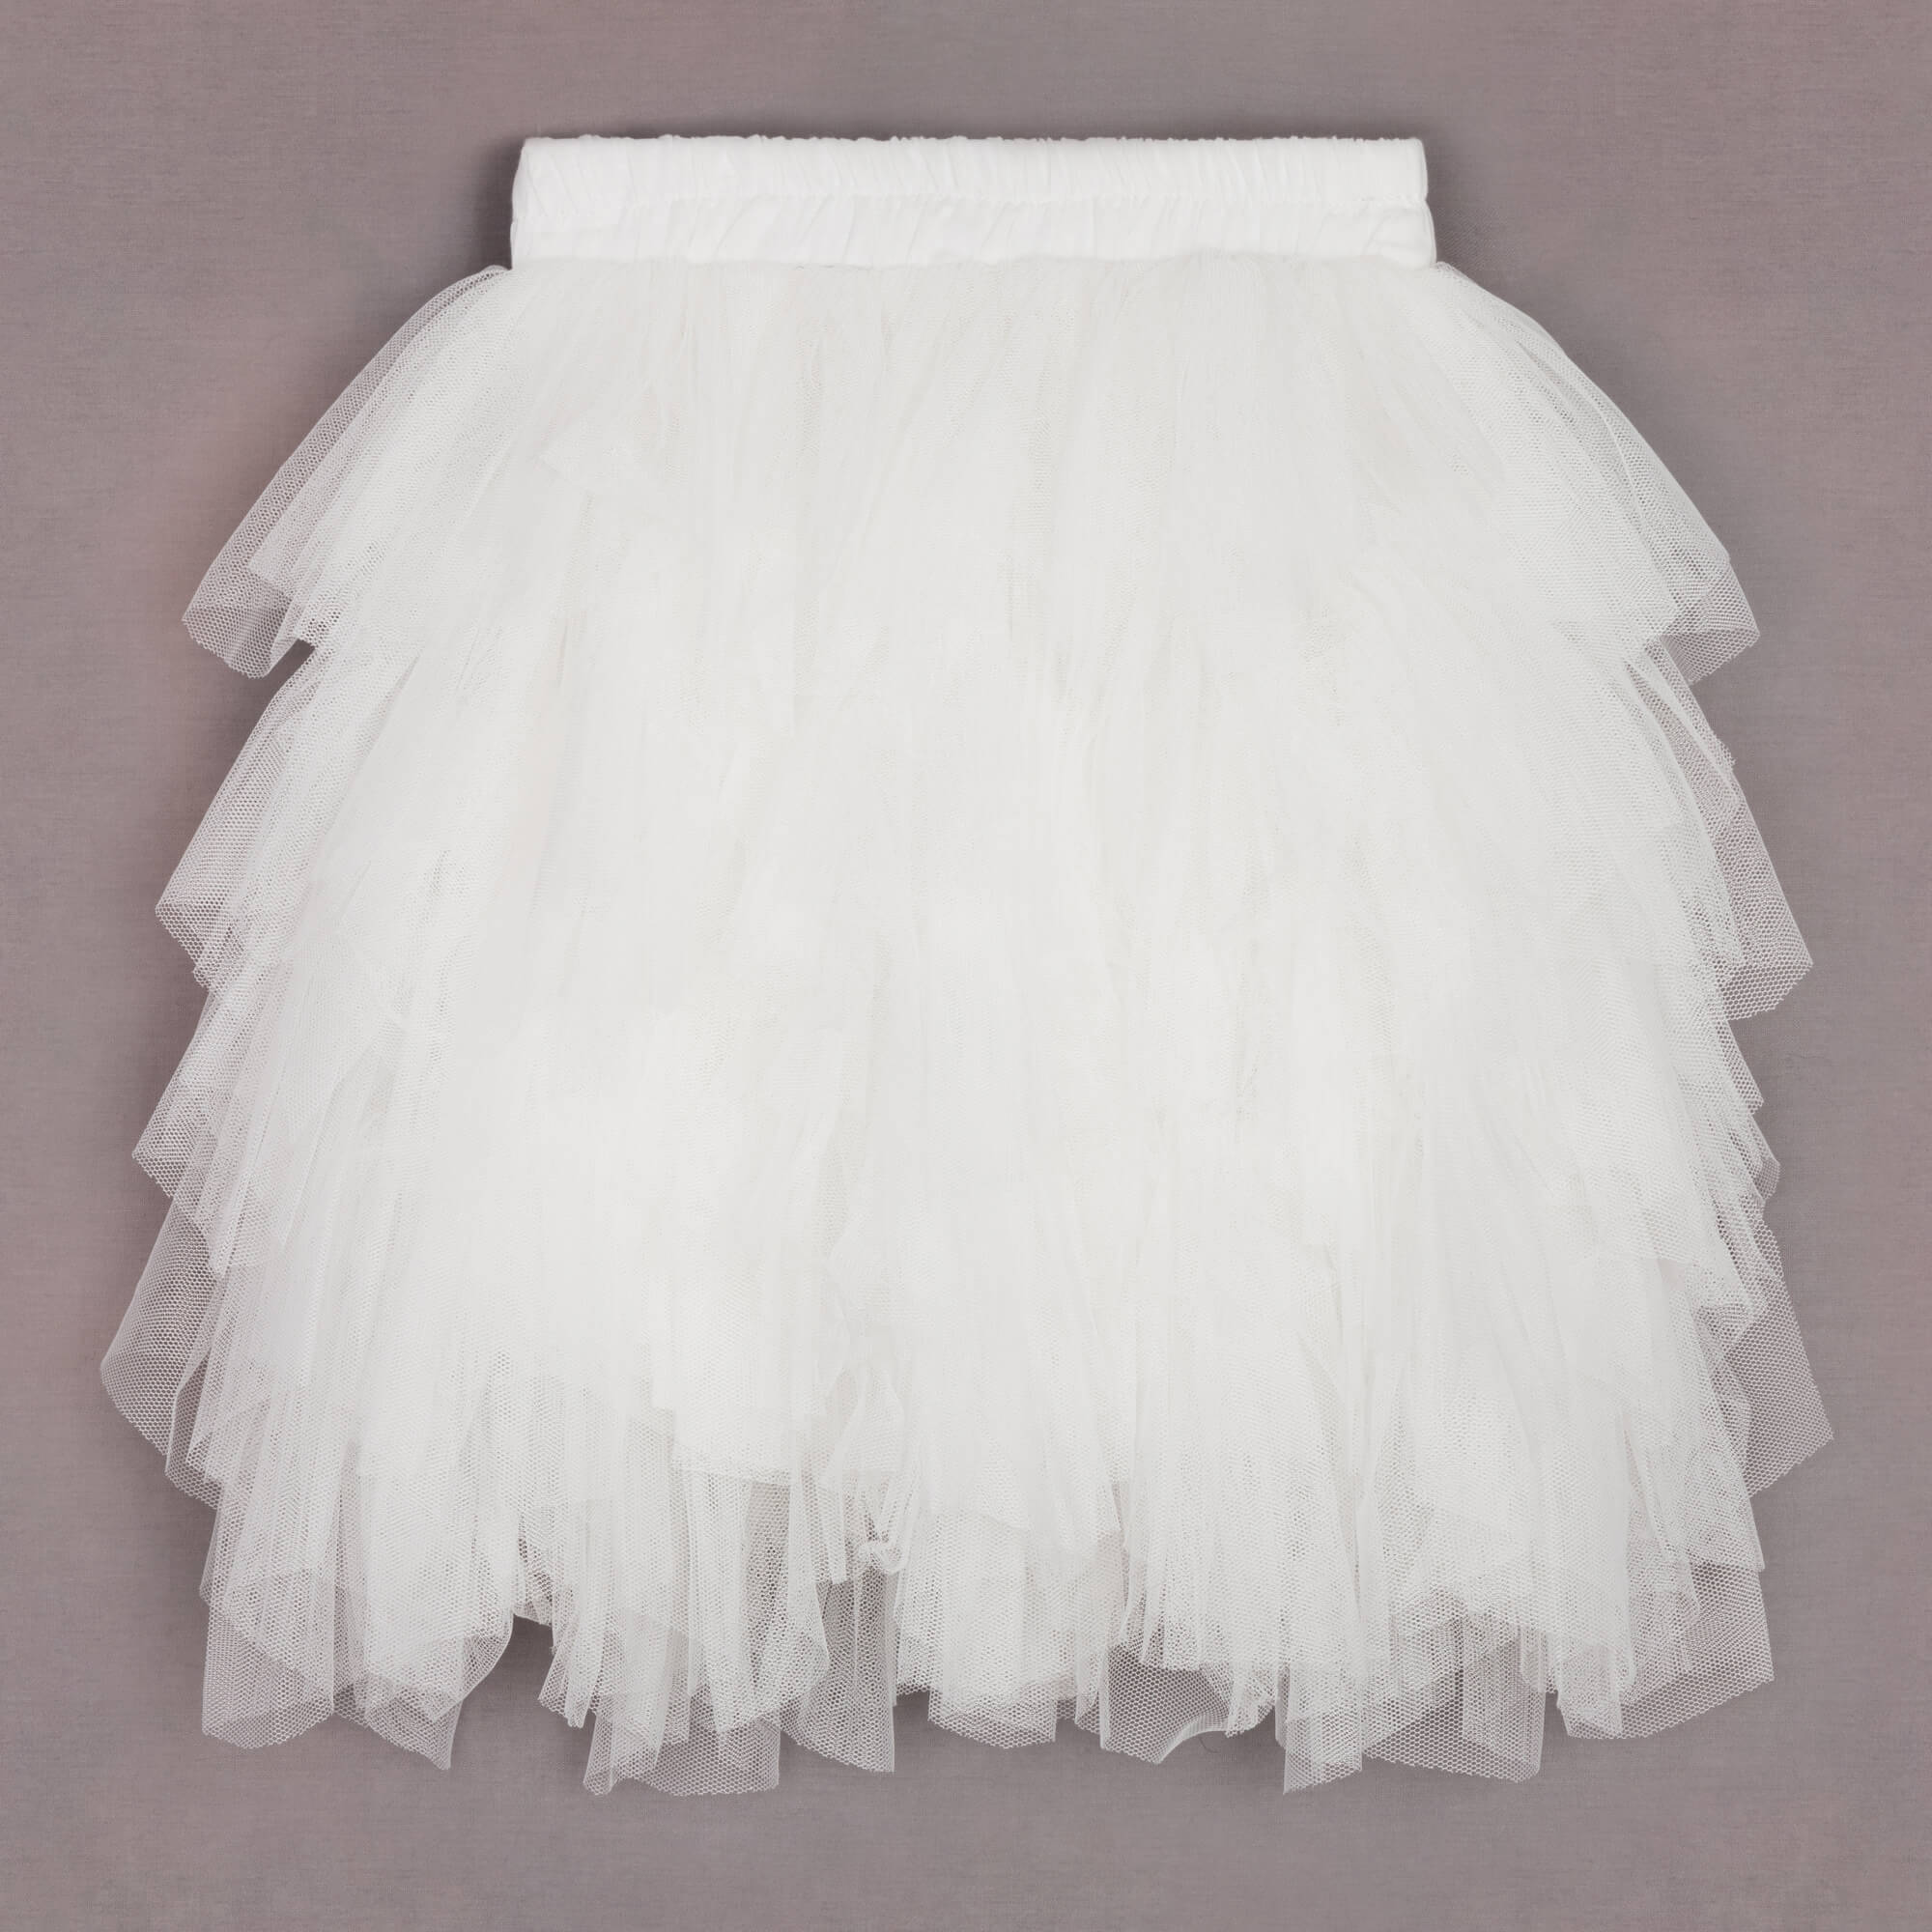 white ruffle skirt